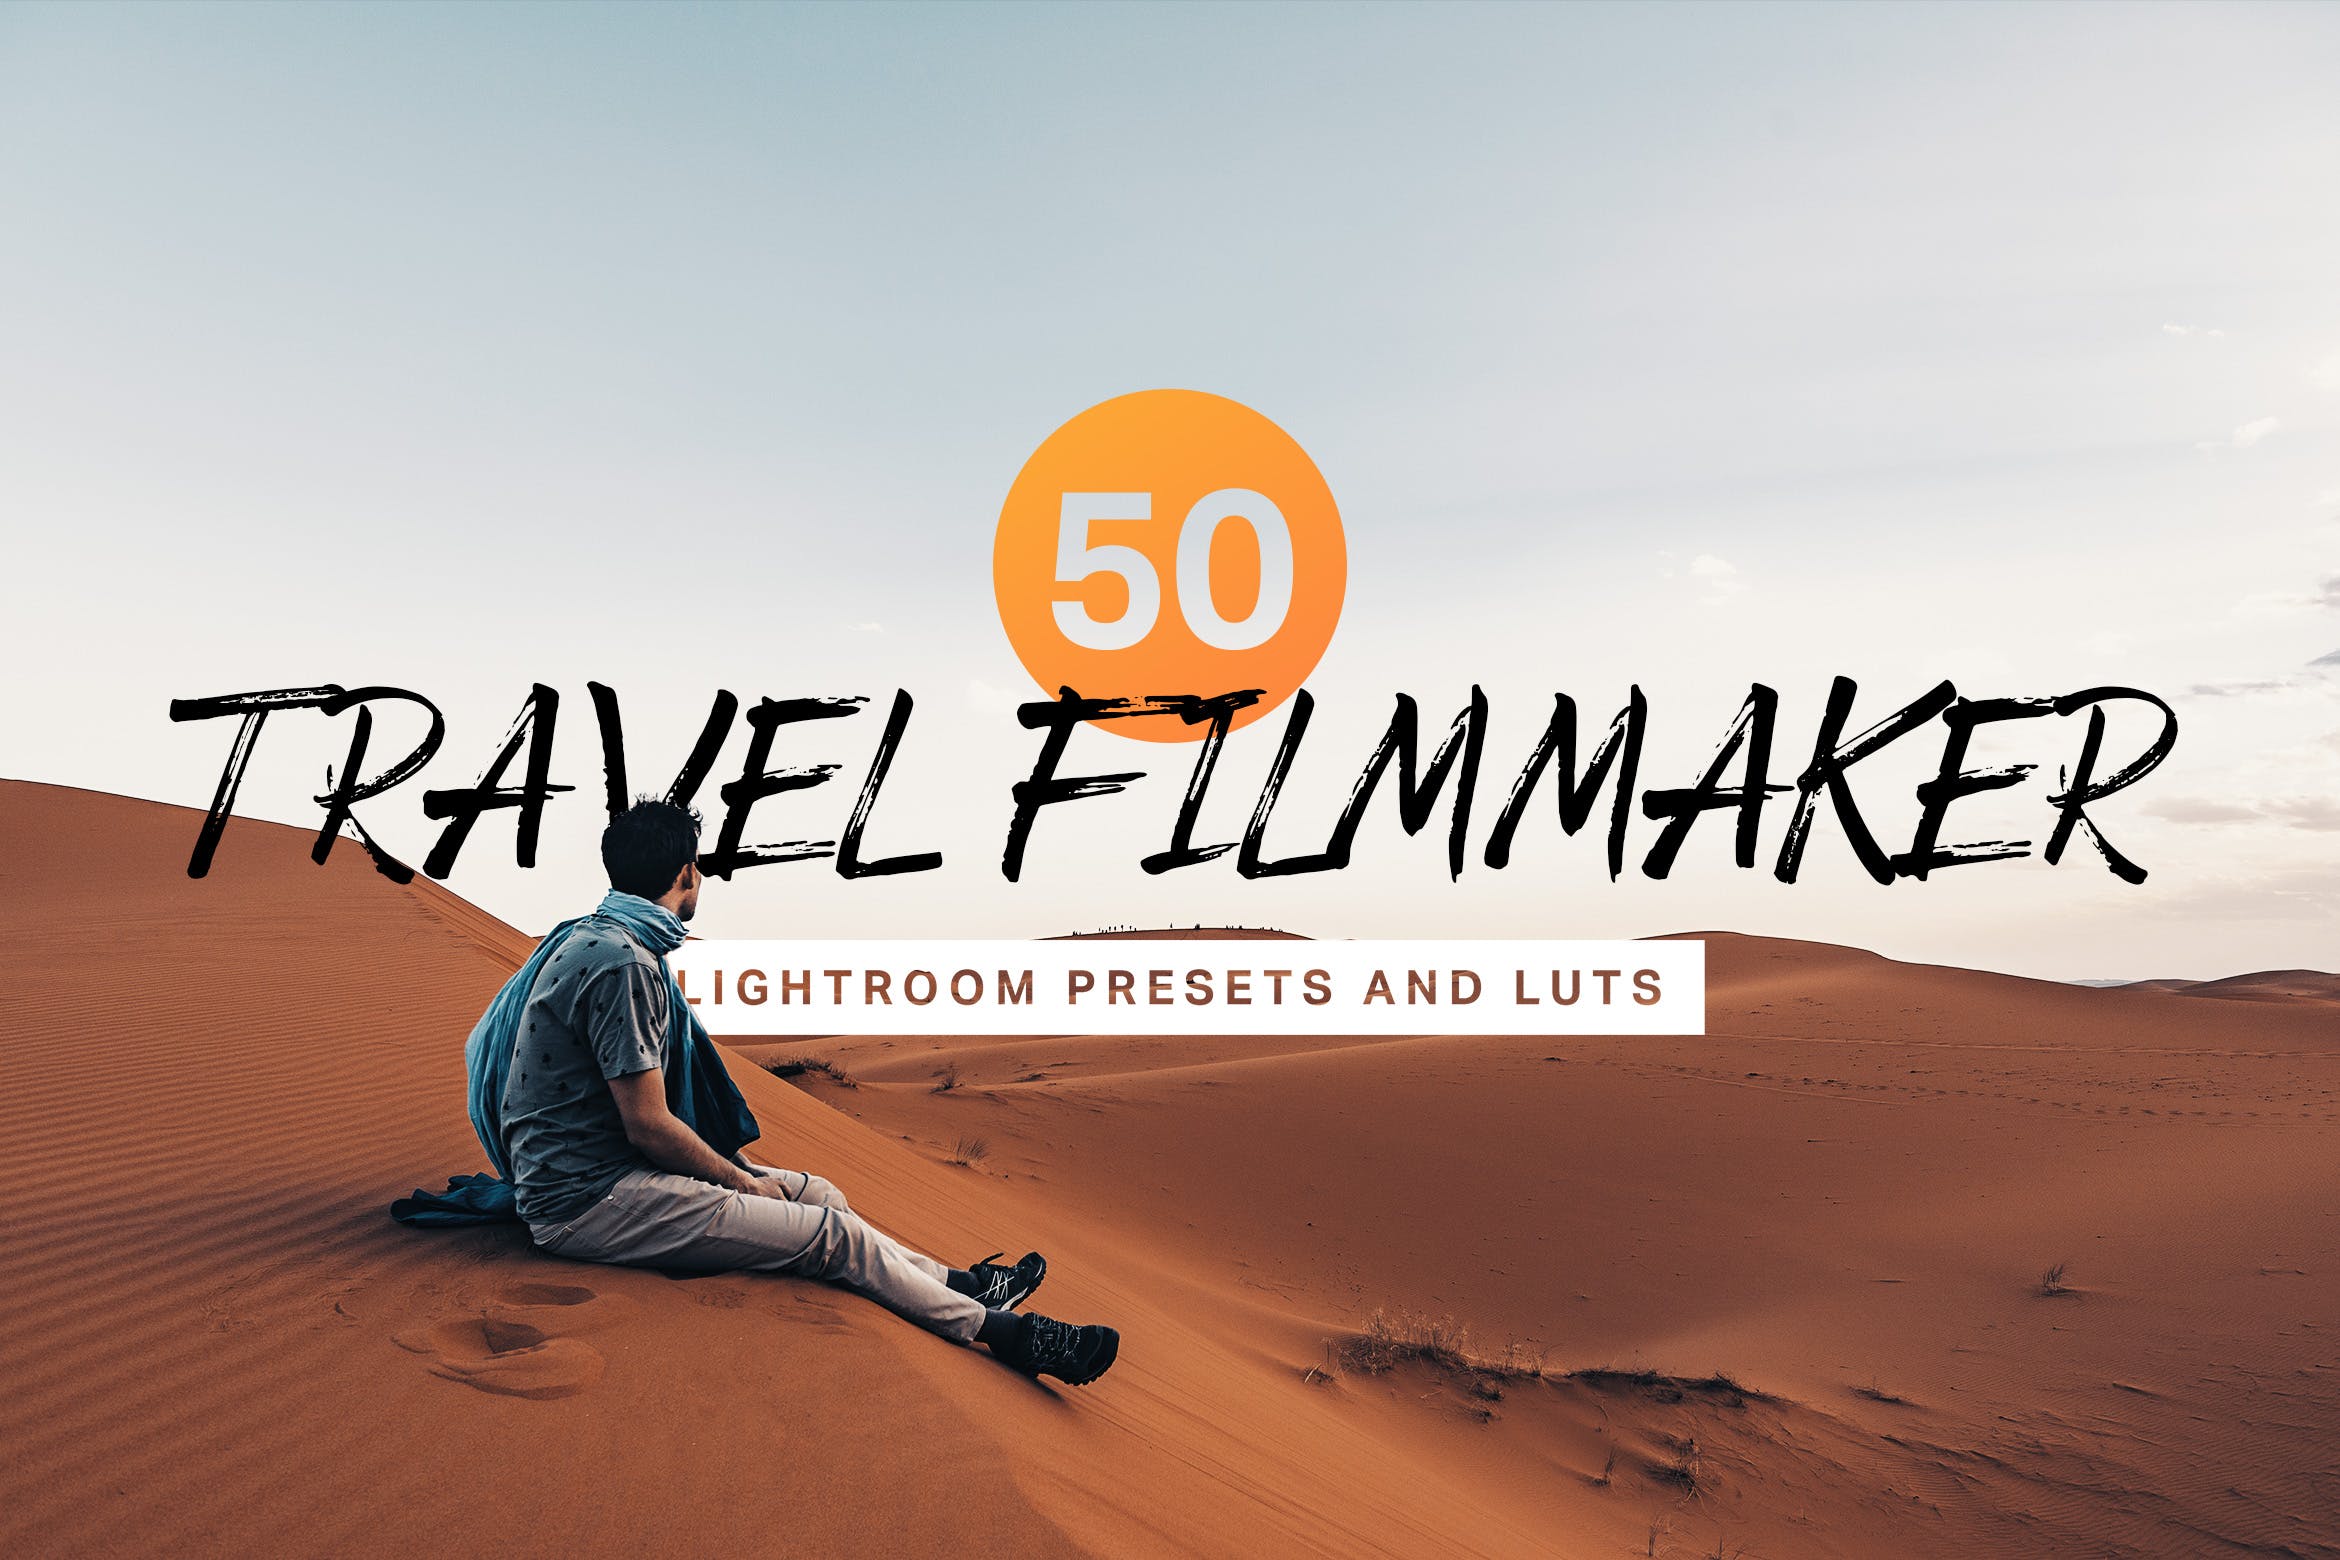 50款旅行照片电影色调滤镜素材天下精选LR预设 50 Travel Filmmaker Lightroom Presets and LUTs插图